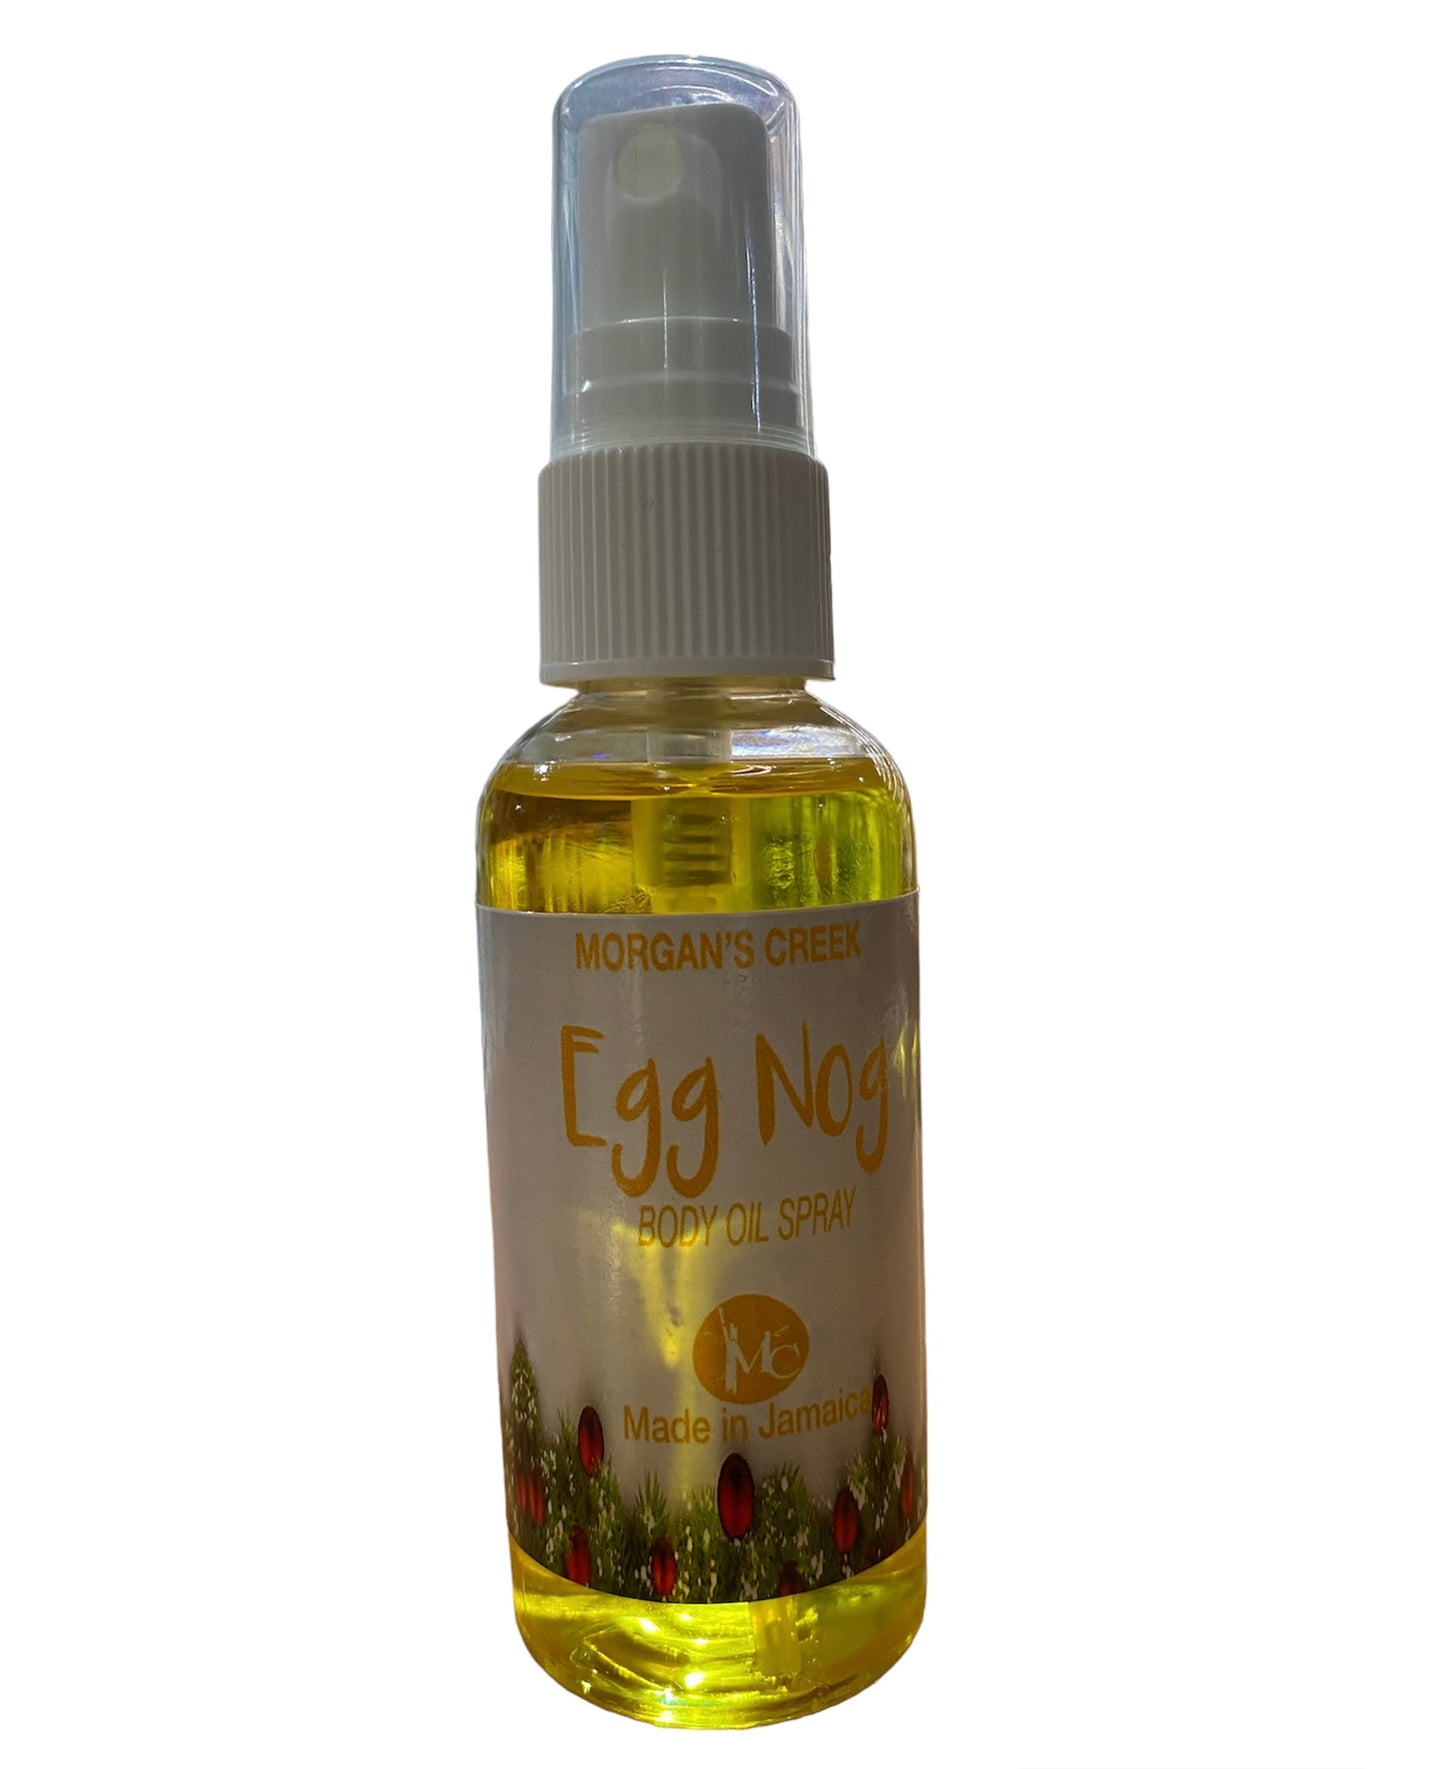 Egg Nog Body Oil